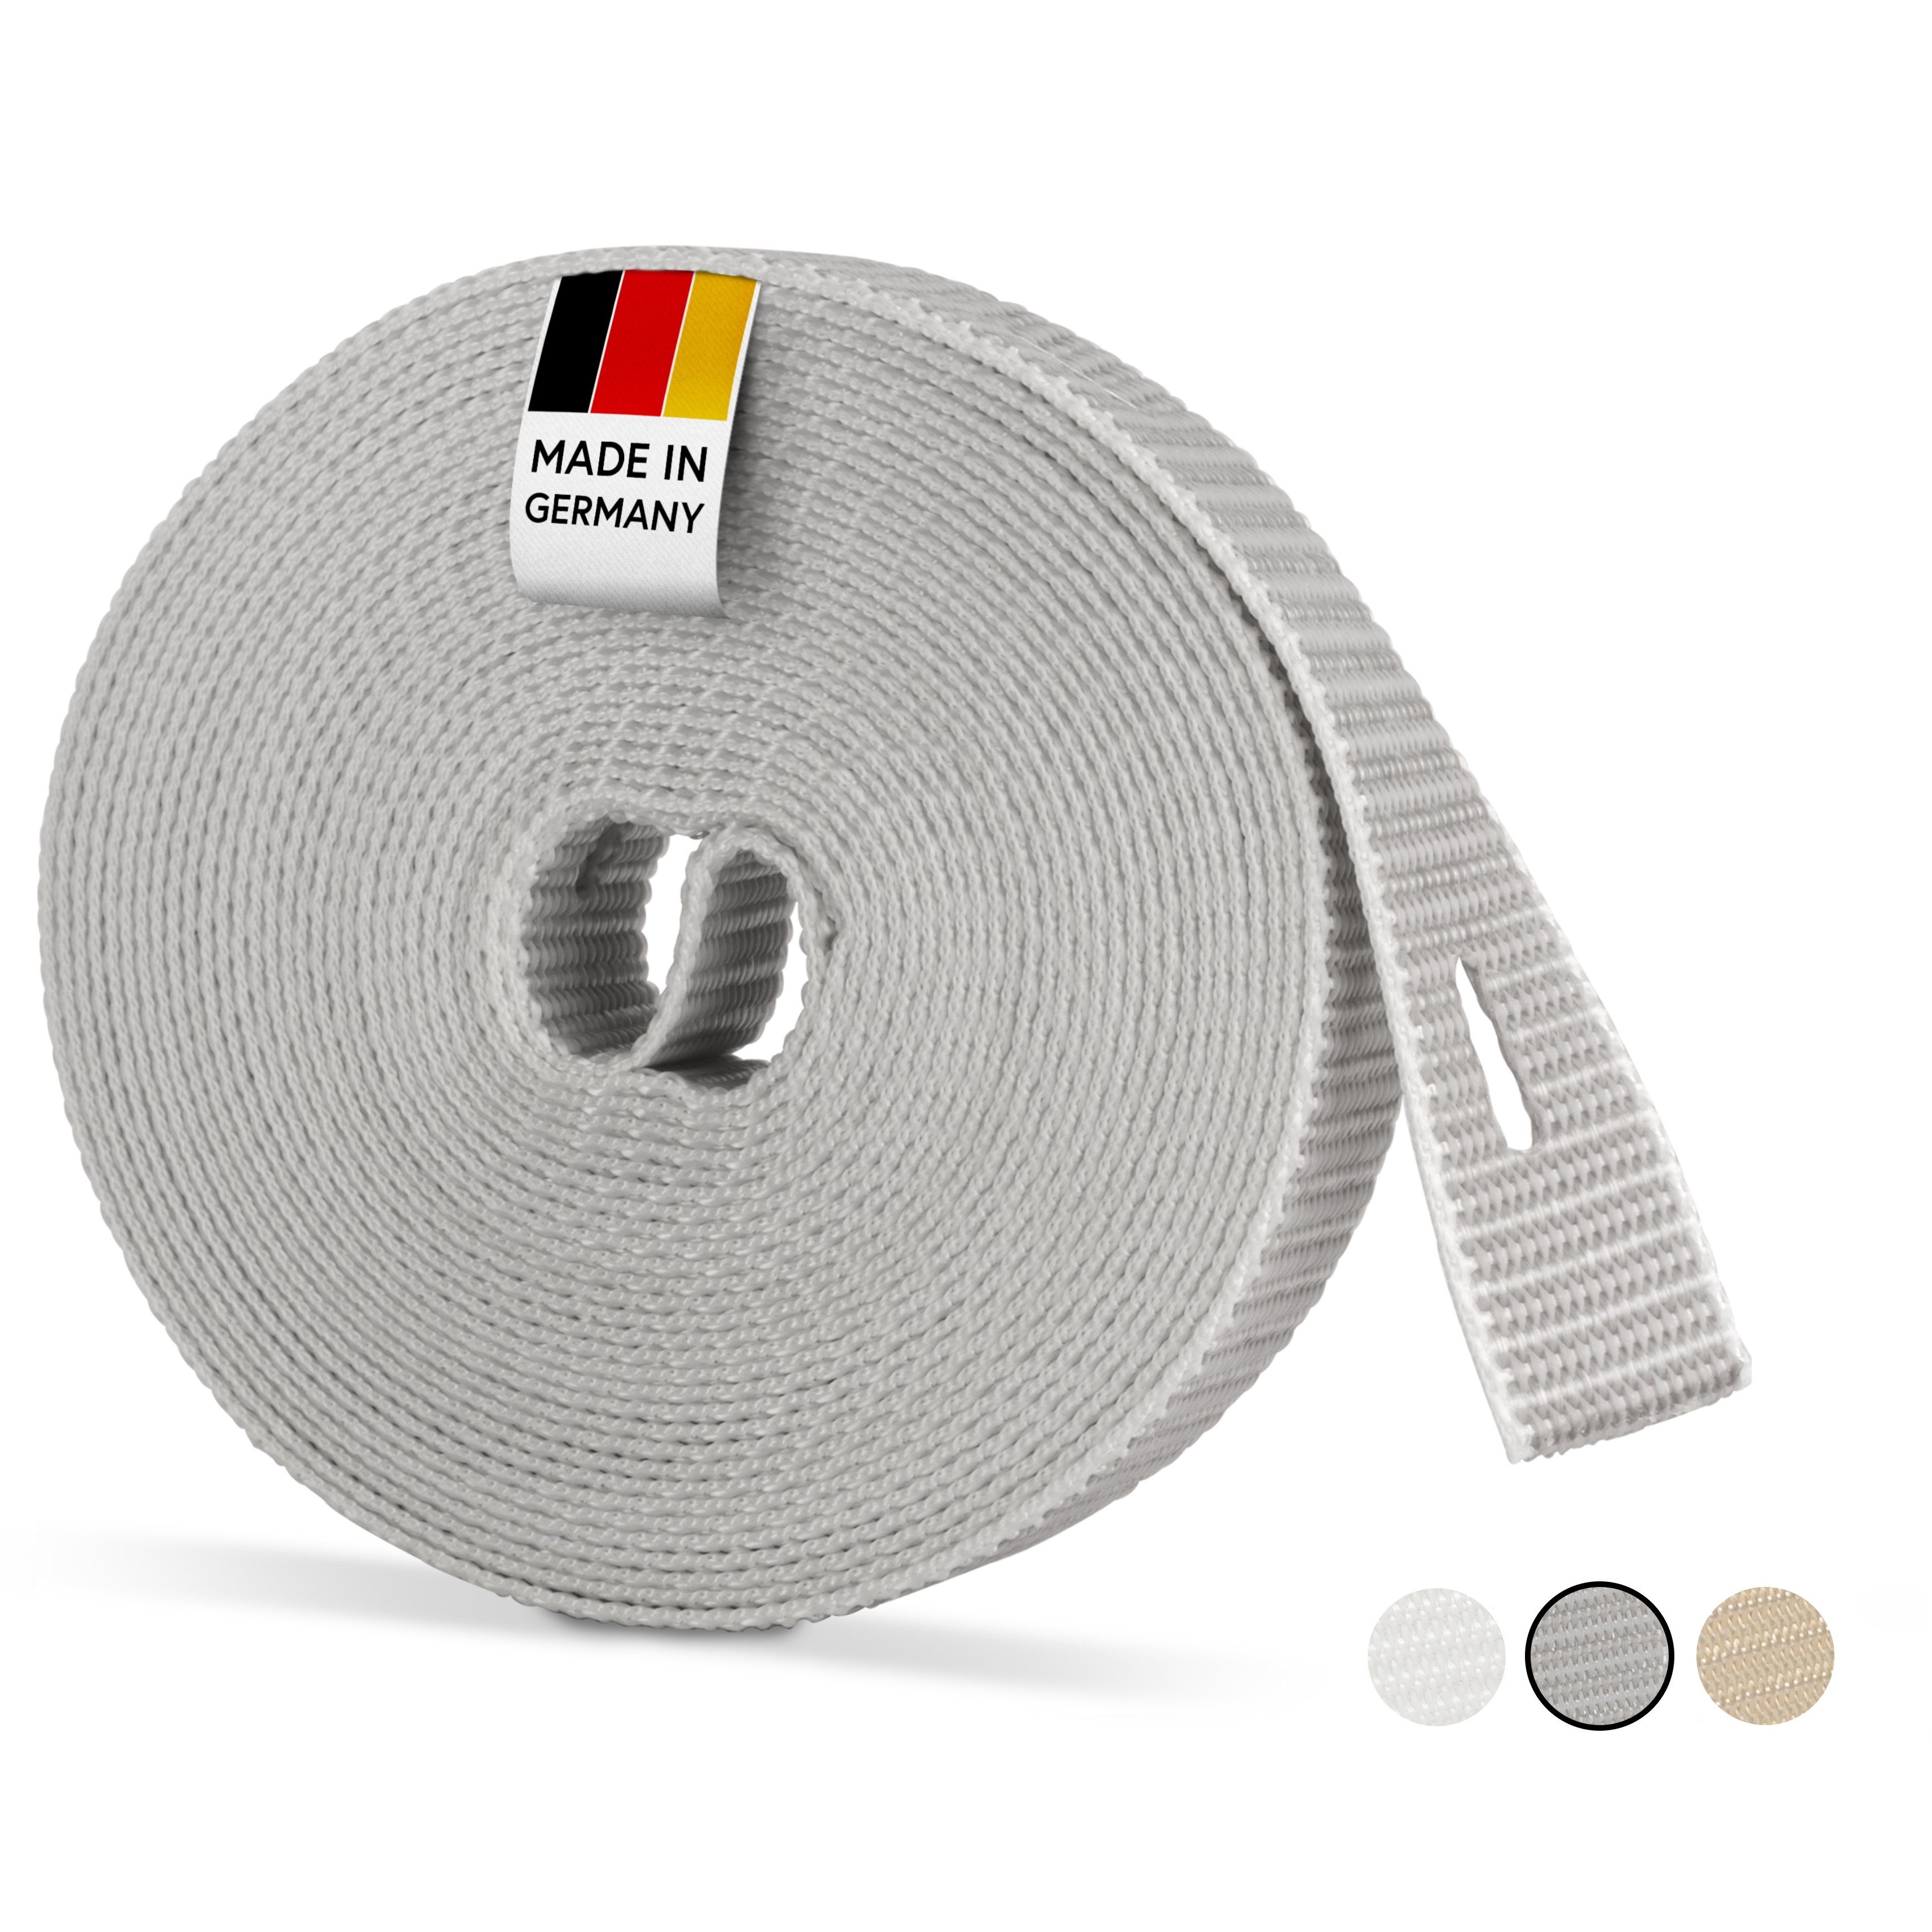 Rollladengurt 22/23 mm in Grau 6m Maxi Rolladengurt strapazier- und reißfest stabiles Rolladenband Gurtband für Rolladen und Jalousie Verstärkte-Ausführung MADE IN GERMANY 